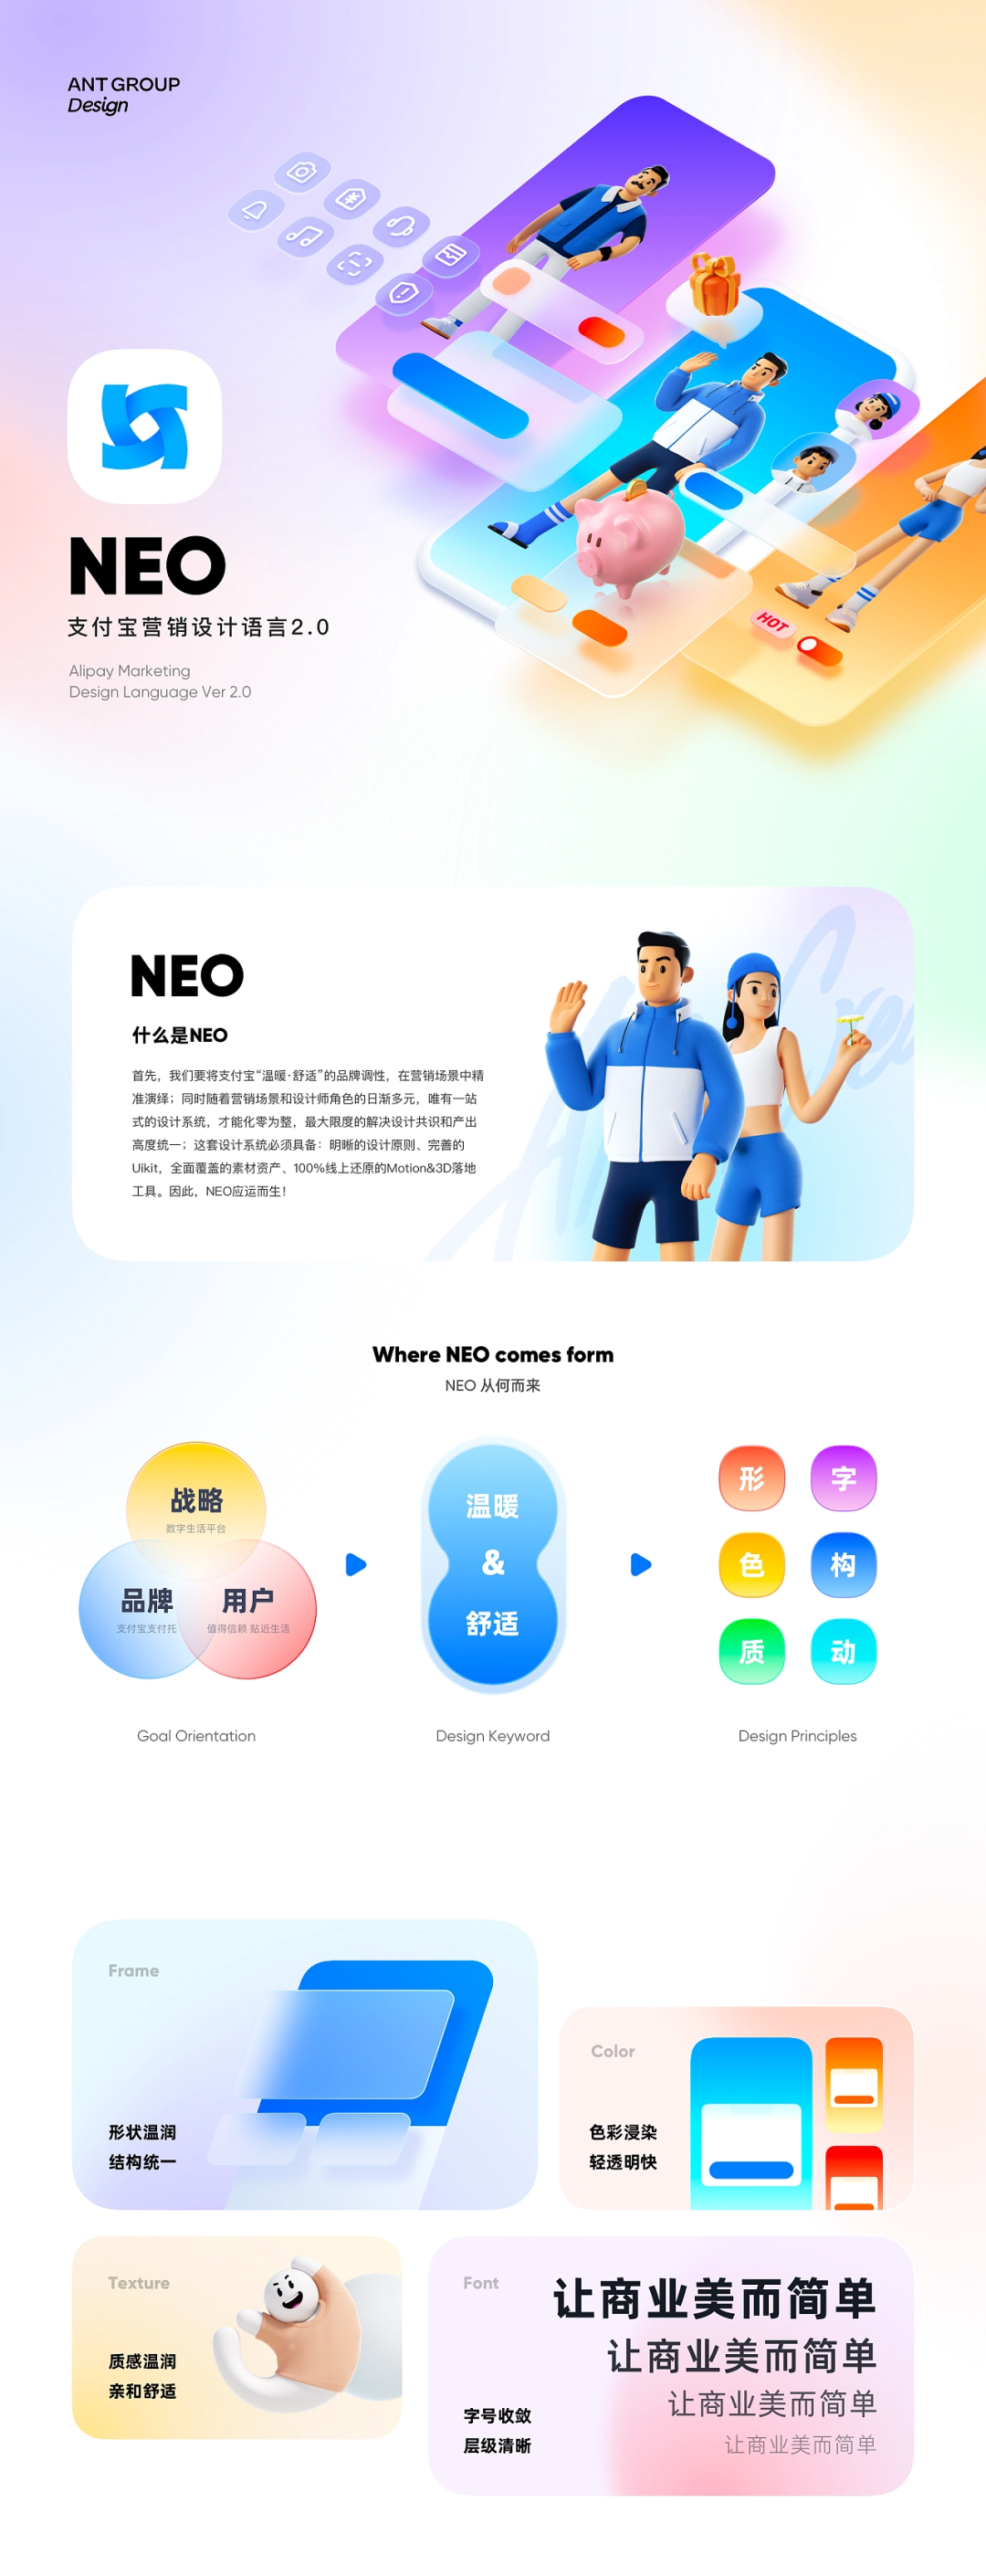 NEO - 支付宝营销设计语言2.0 - 图1